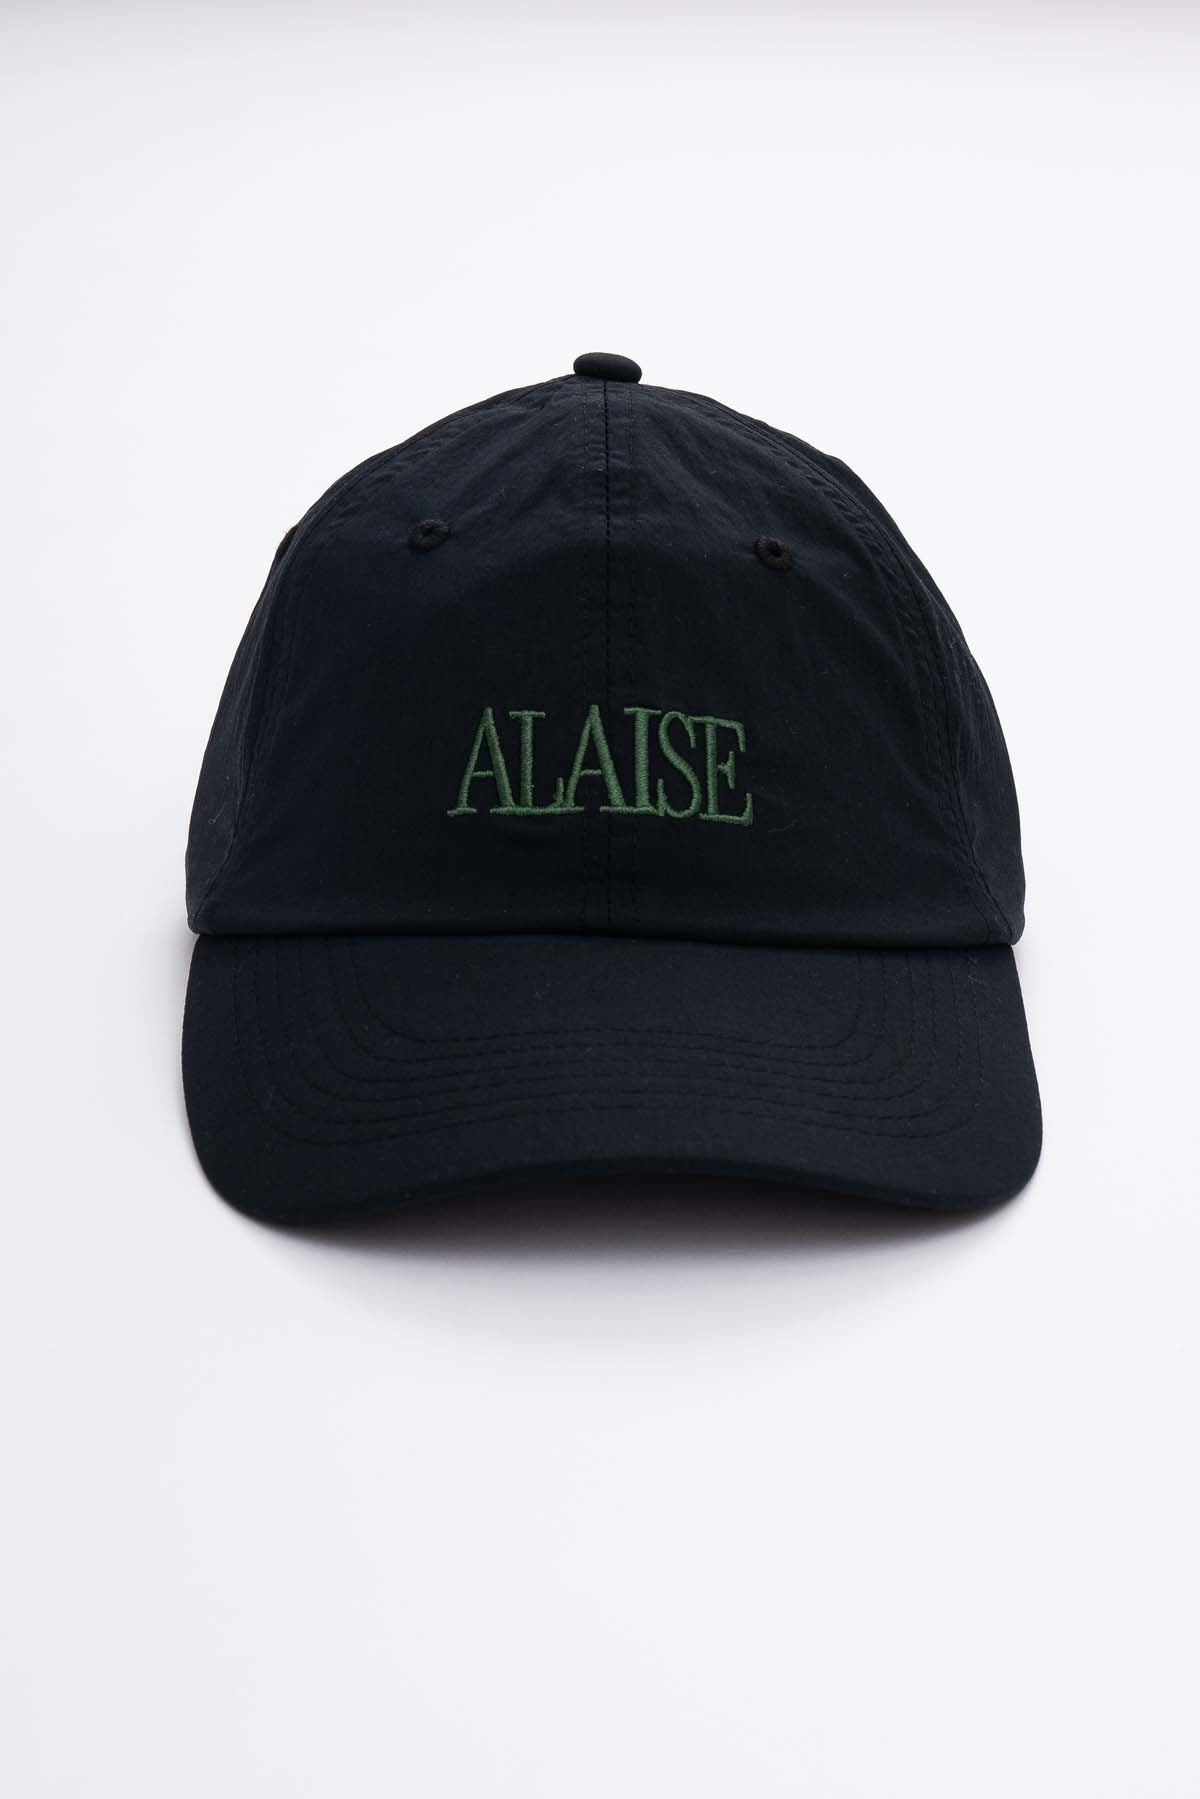 Alaise Active Cap – Black